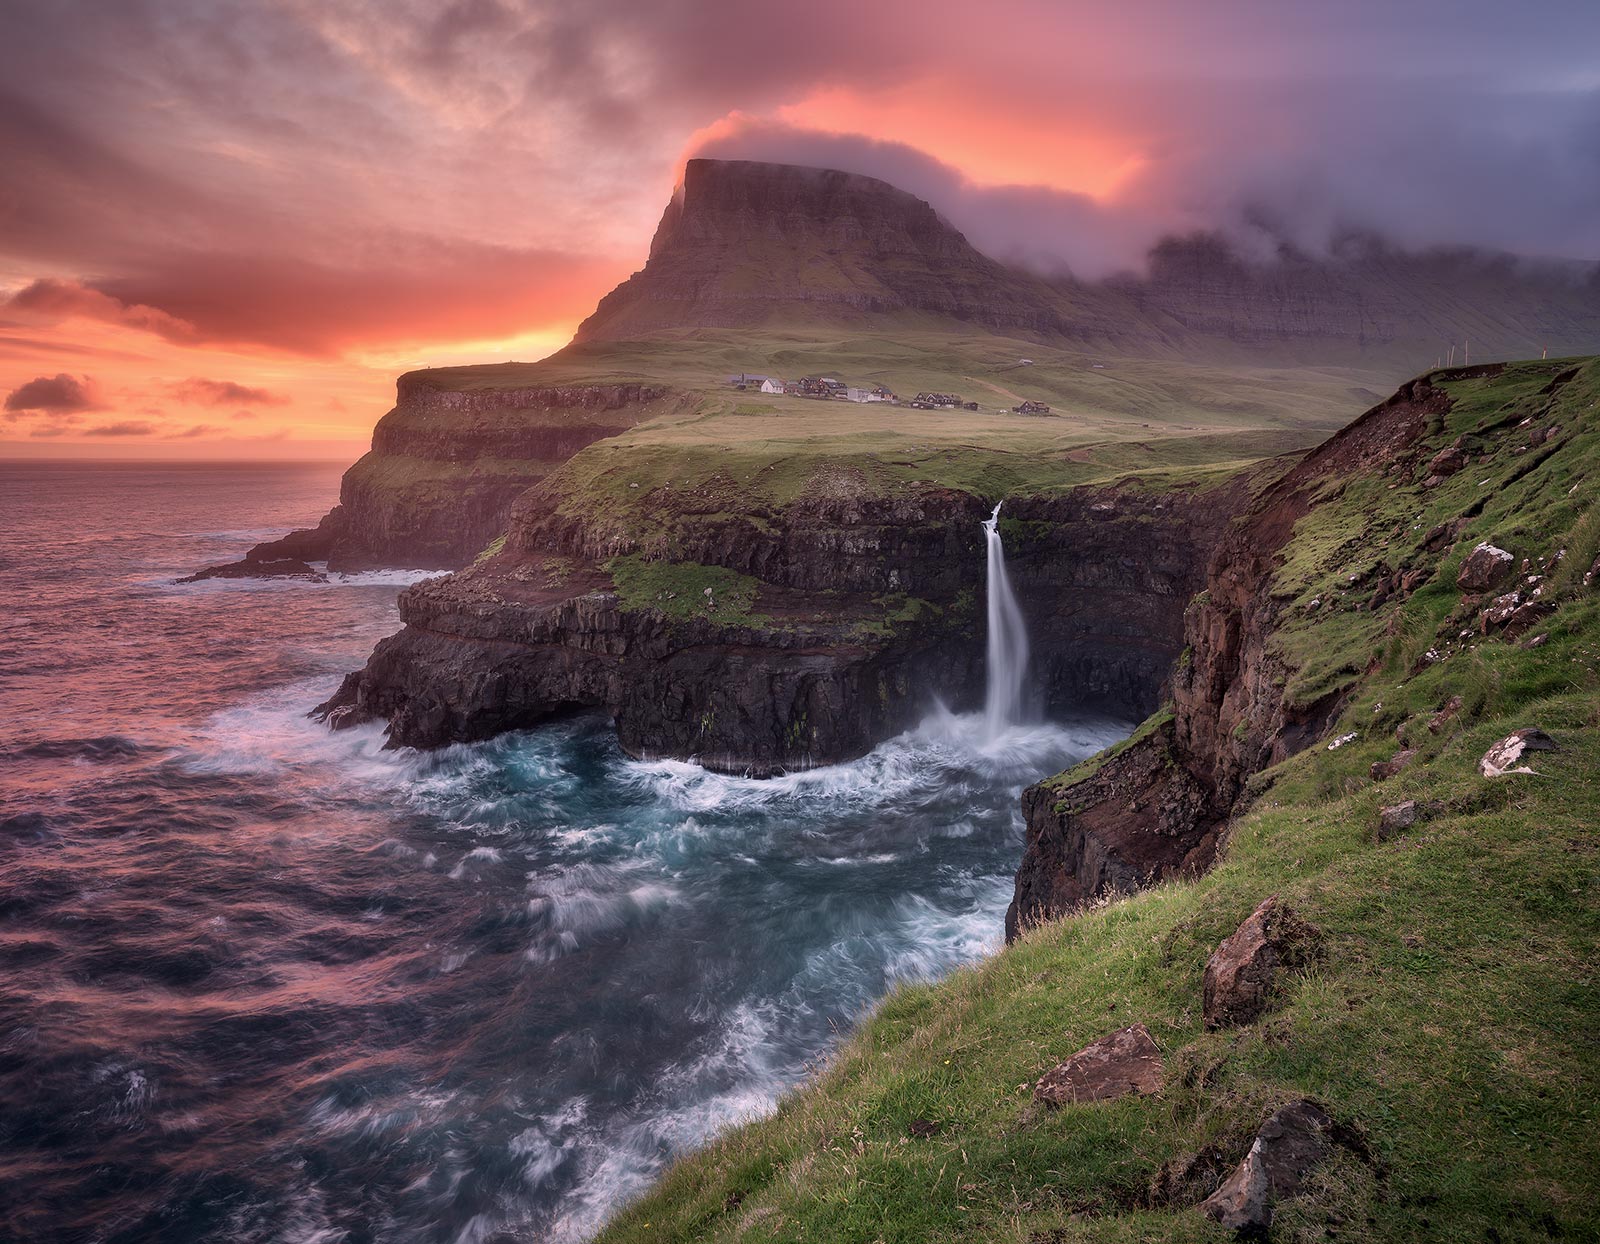 Мои океаны мои водопады если будет. Фарерские острова водопад Мулафоссур. Водопад Мулафоссур. Islands Gjogv Faroe foto 4k.